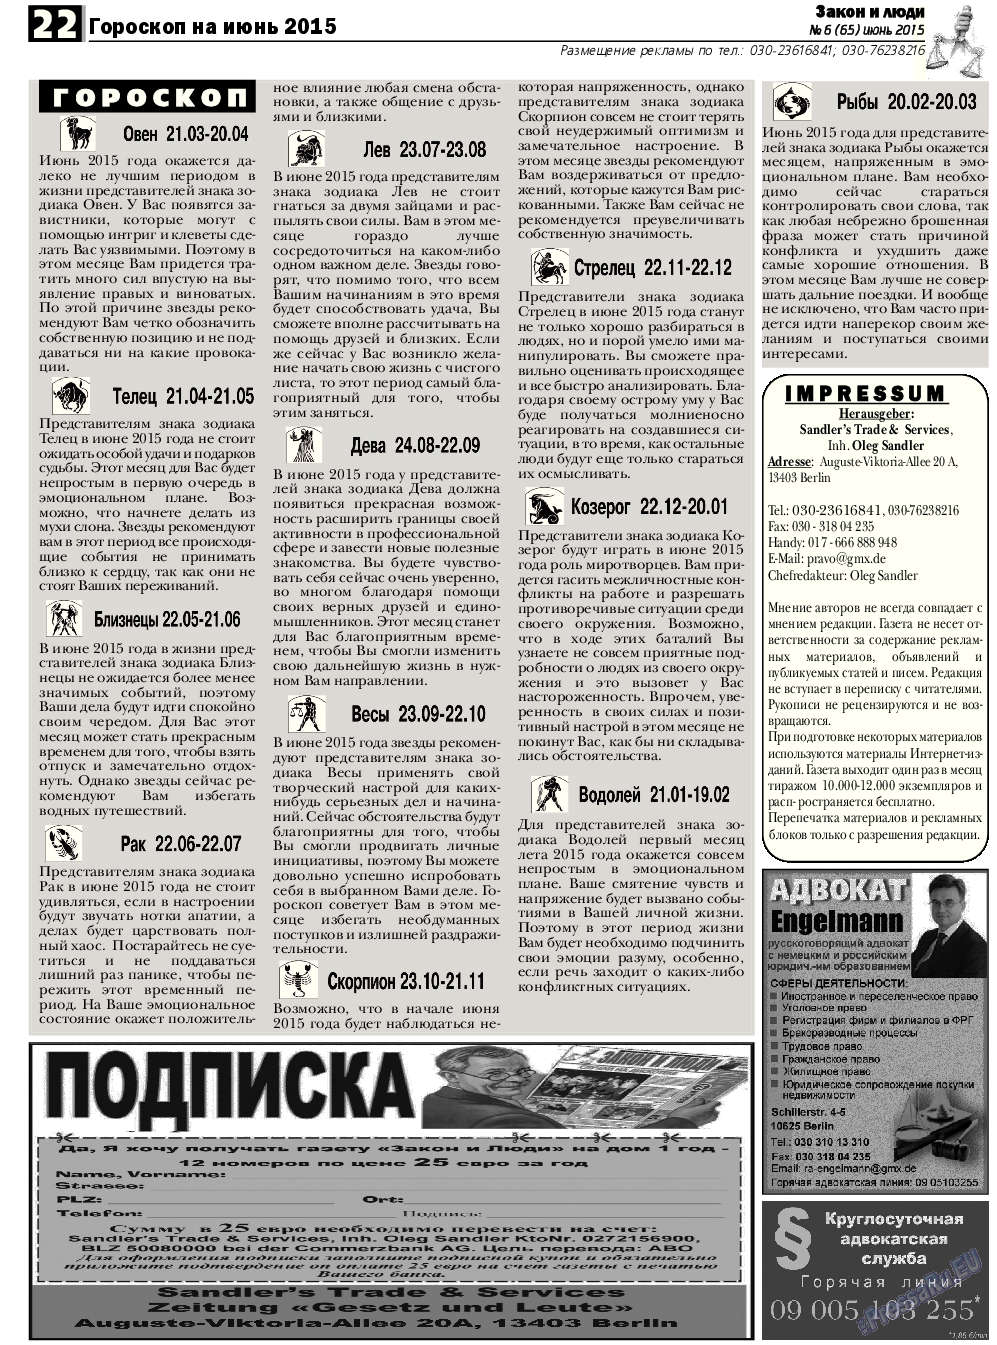 Закон и люди, газета. 2015 №6 стр.22